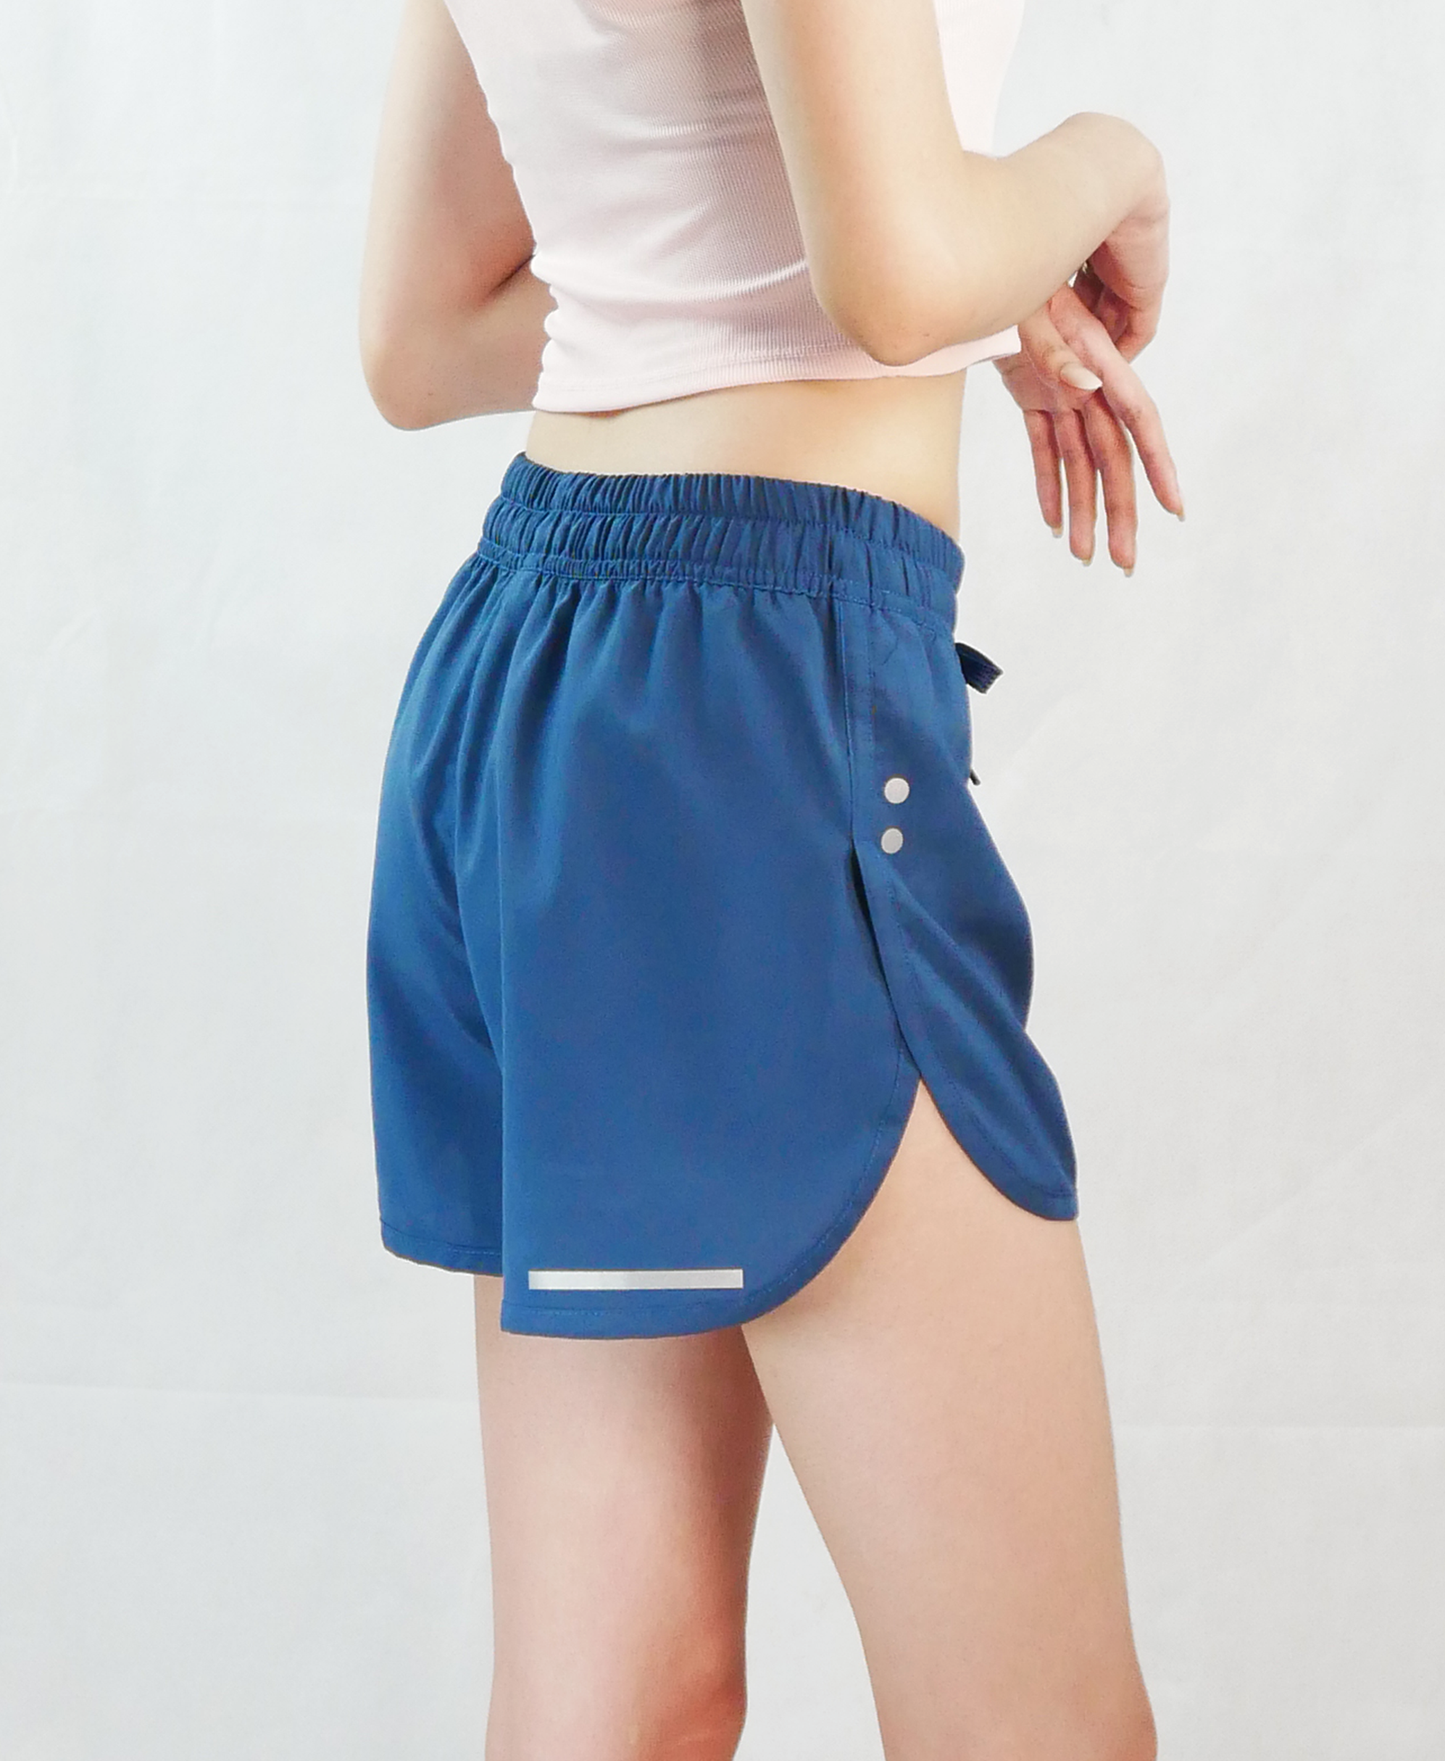 Backburn Women's Locomotion Shorts